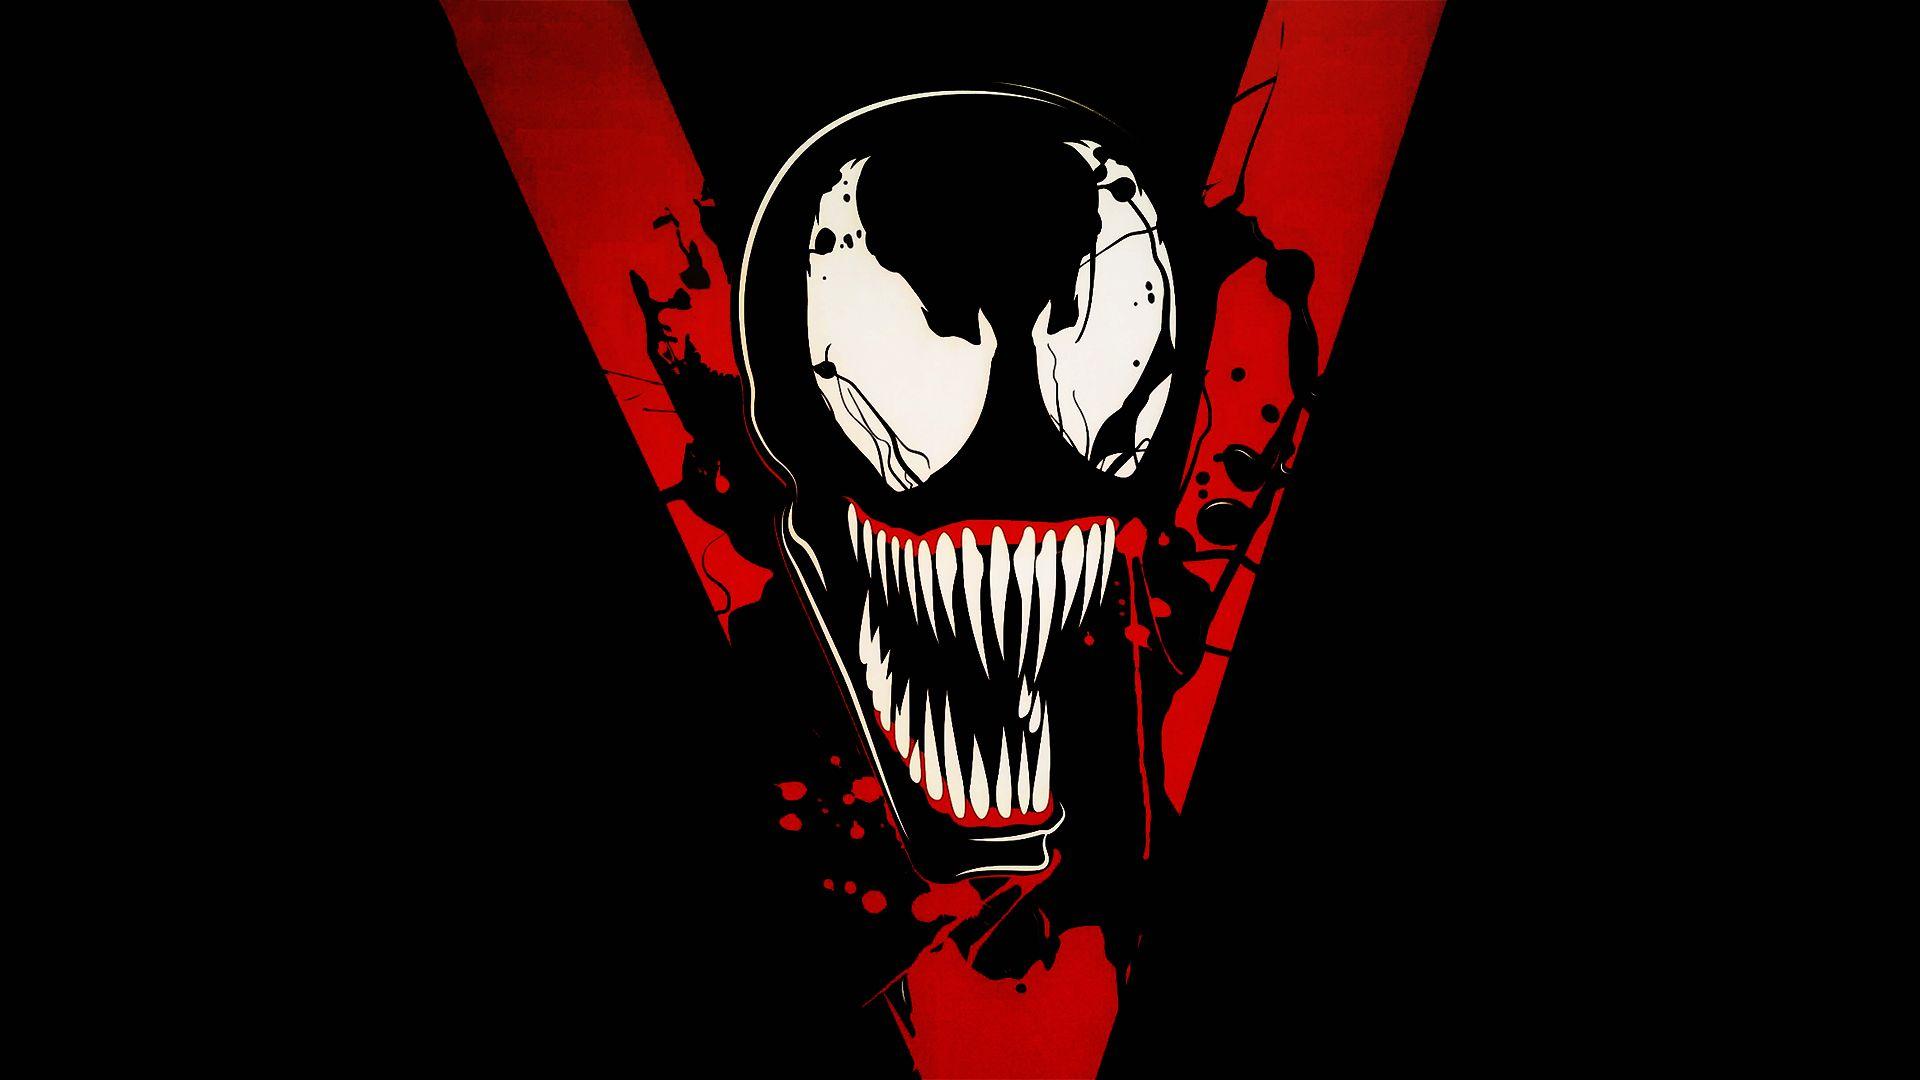 Venom 2018 Movie, HD Movies, 4k Wallpaper, Image, Background